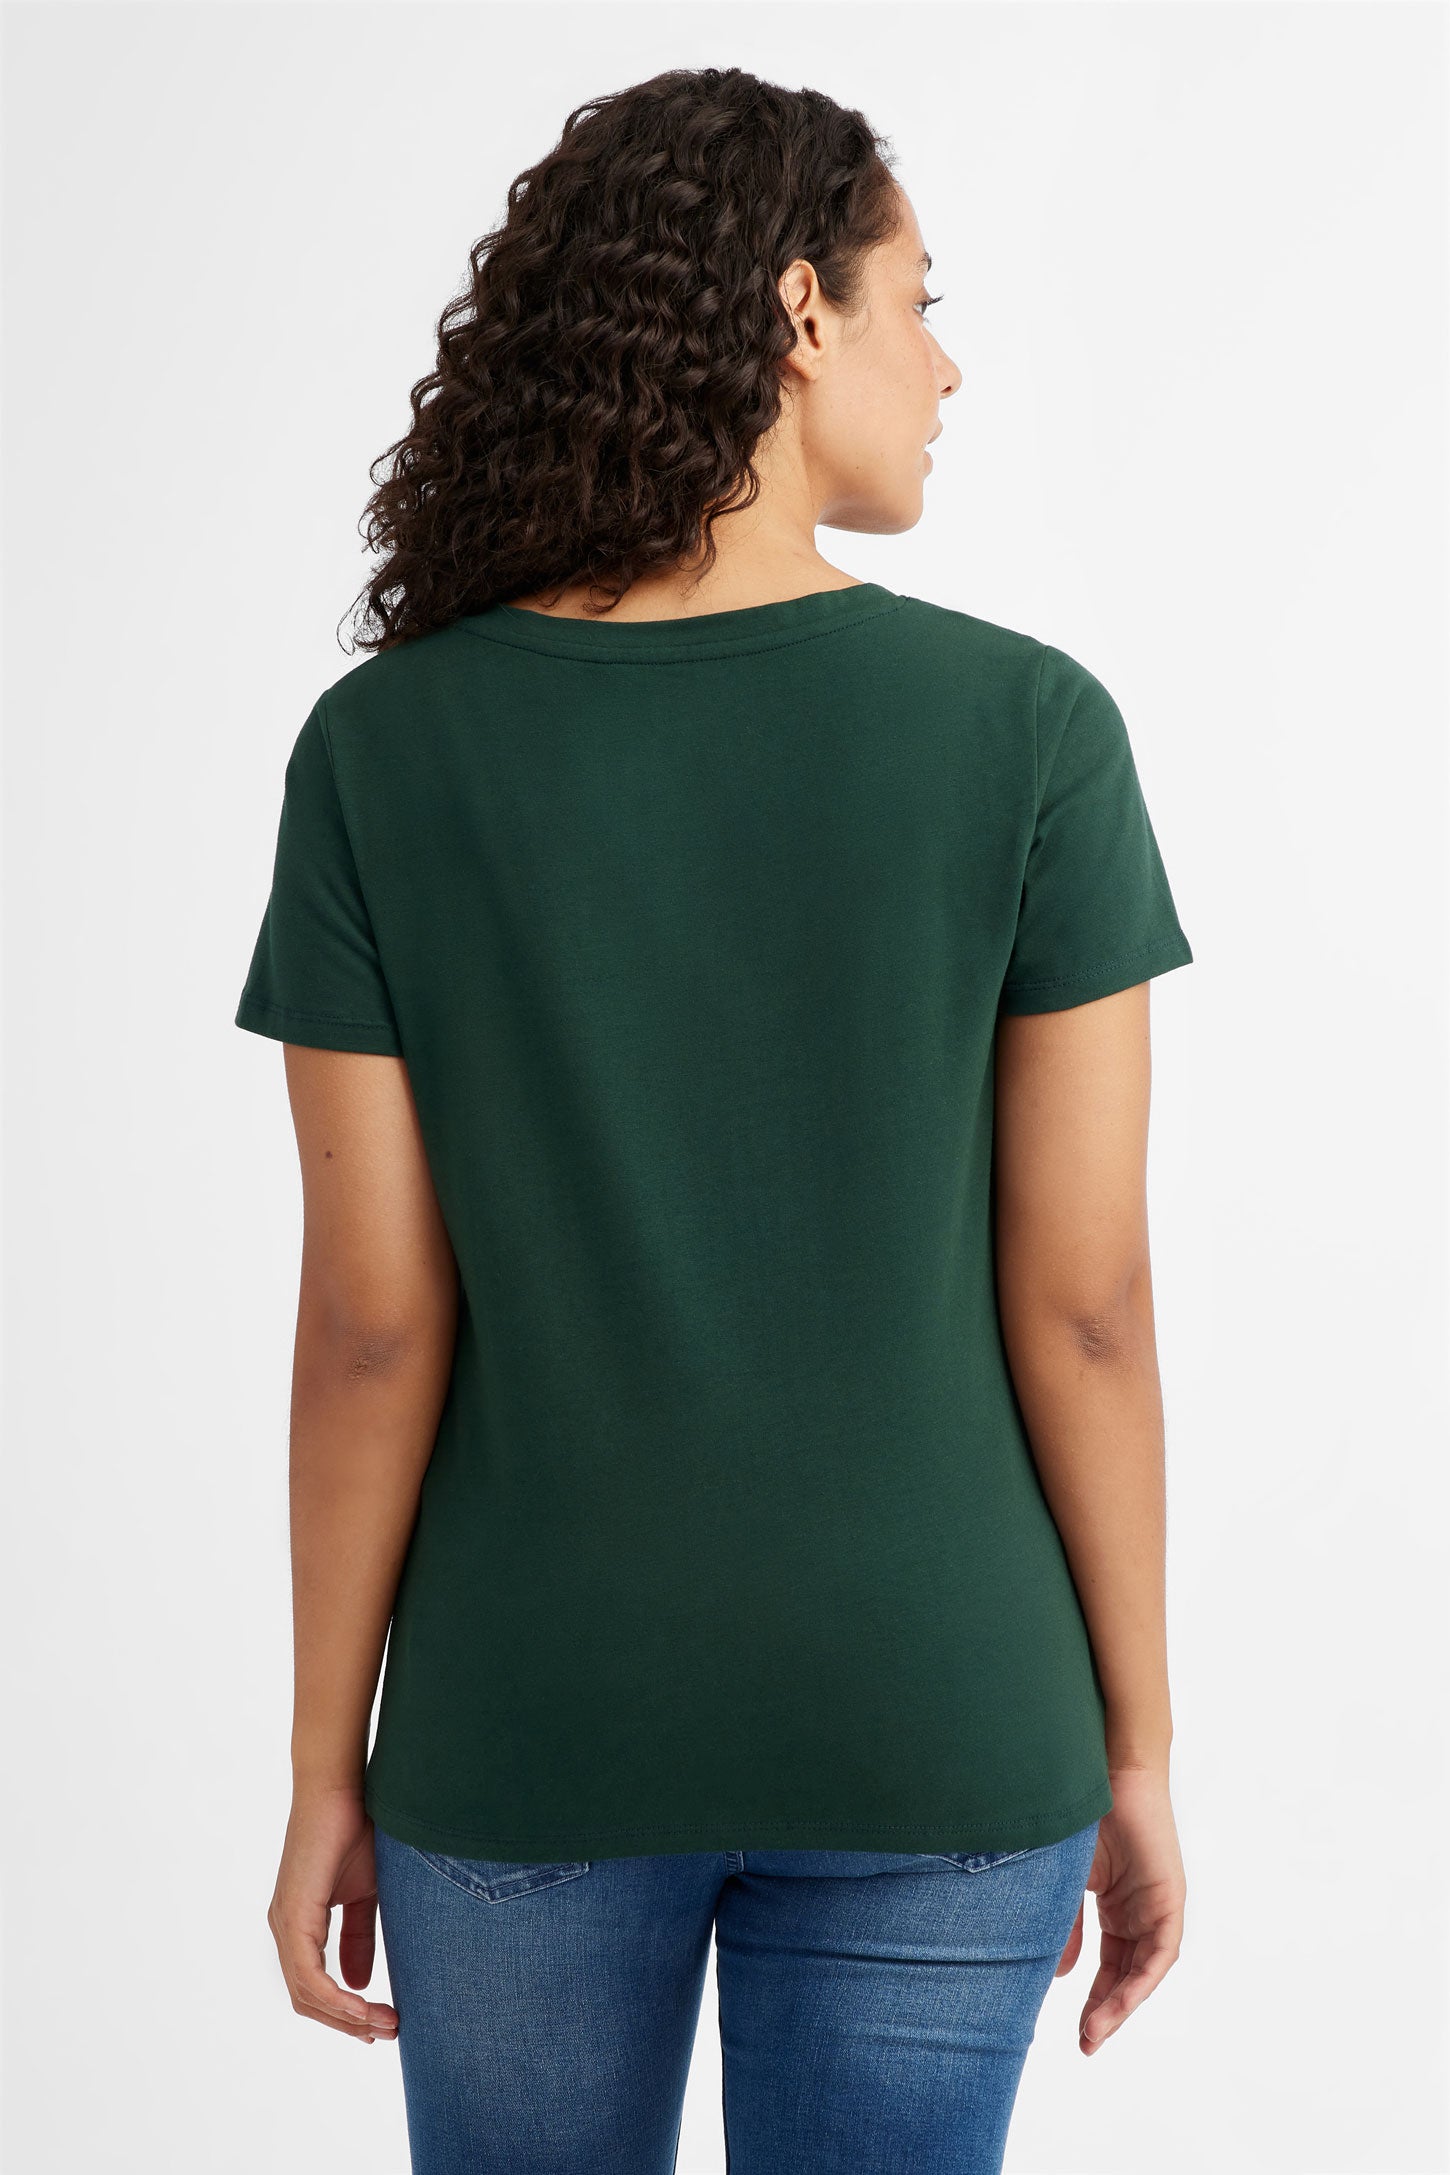 T-shirt col v poche poitrine Creeks vert clair femme